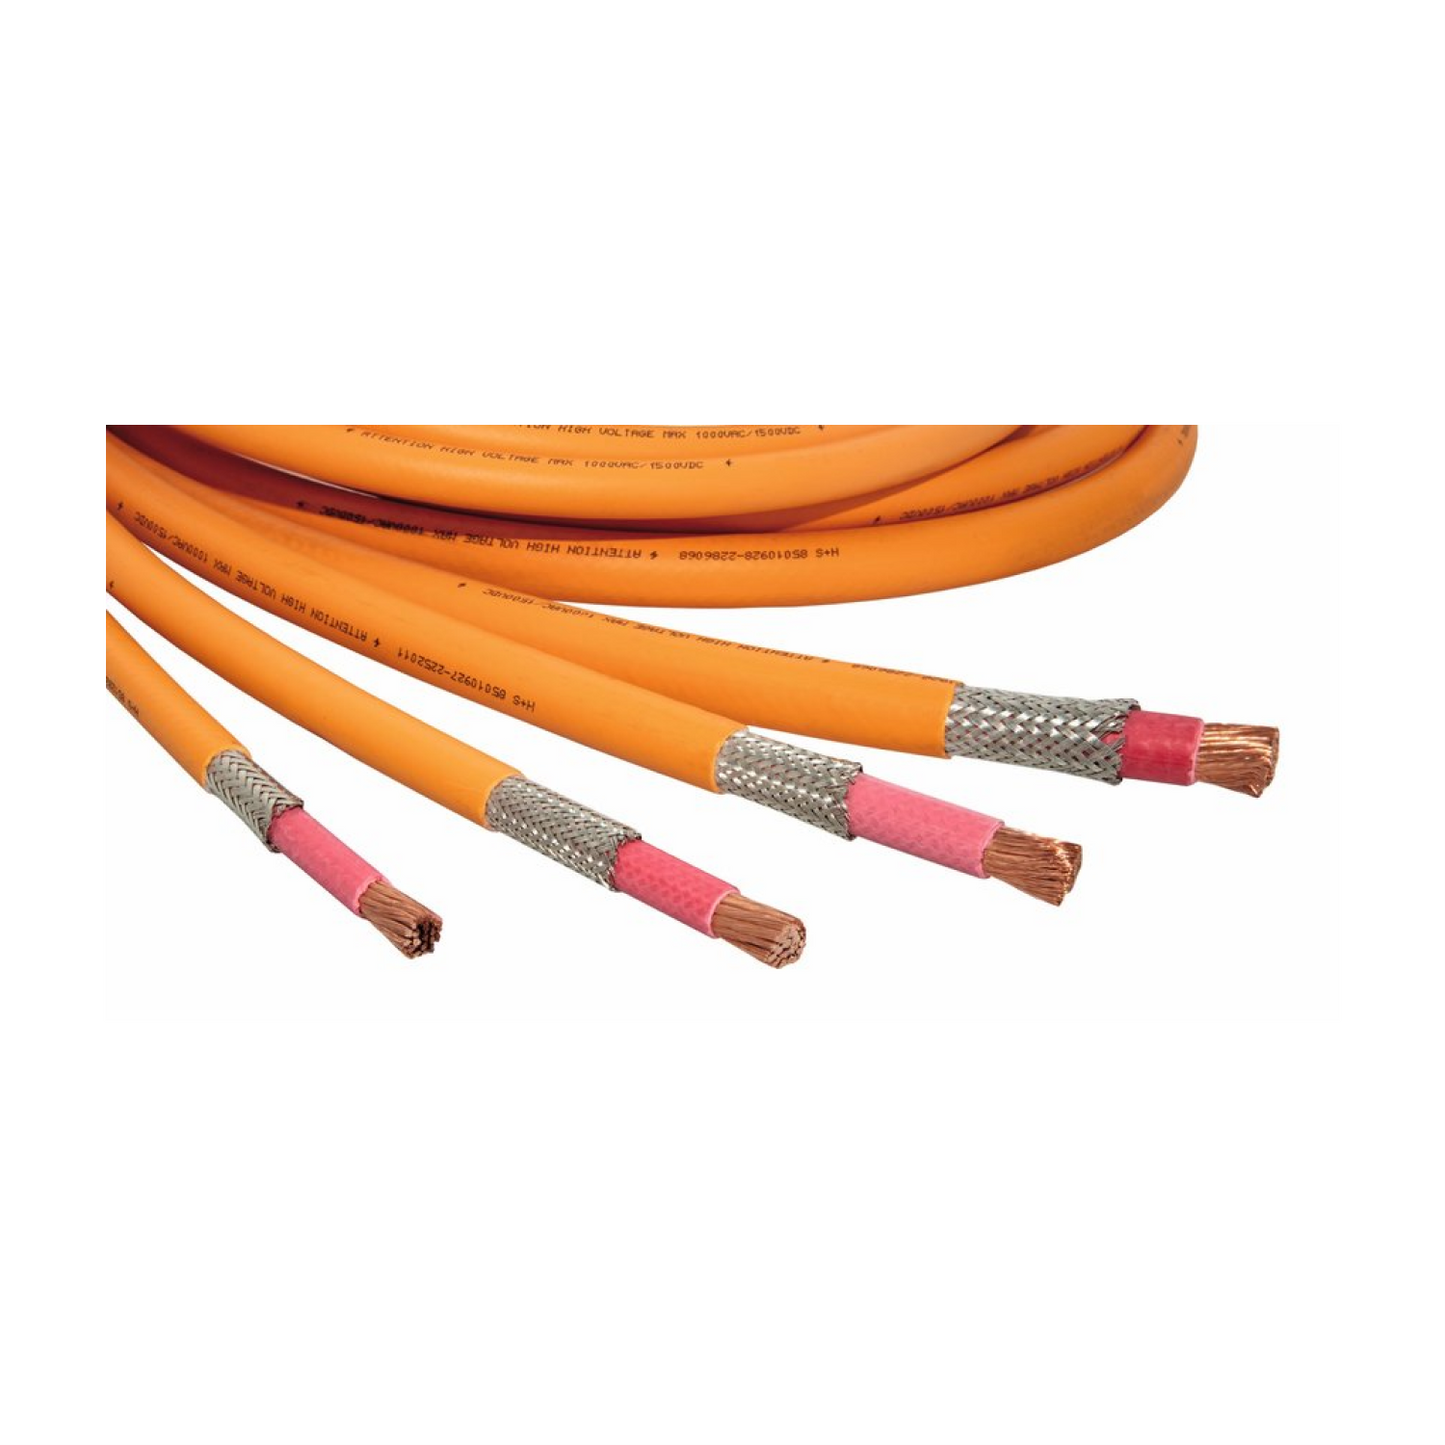 6mm2 RADOX 155 High Voltage Cable - 12582309 – Big Orange Cable